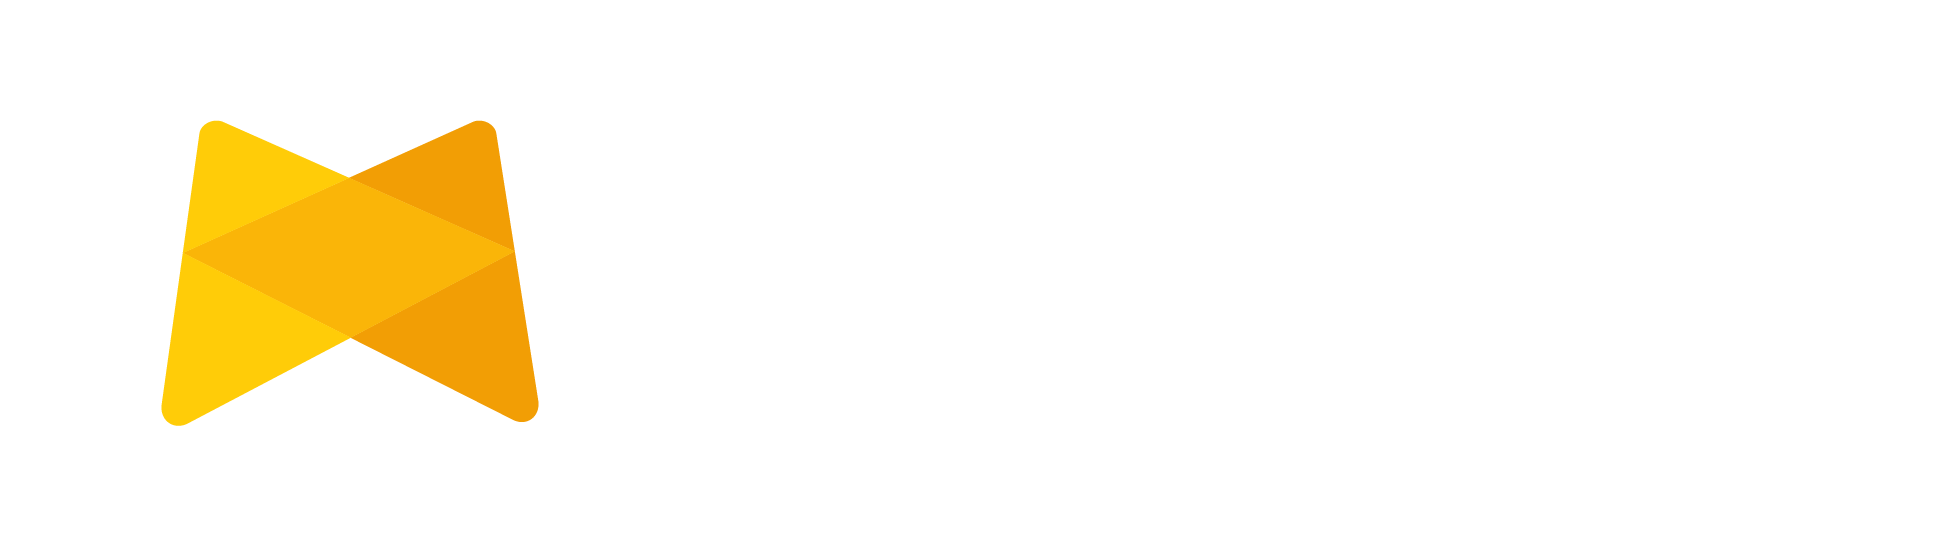 Metapilots - Ihr Partner für virtuelle Veranstaltungen und Messen